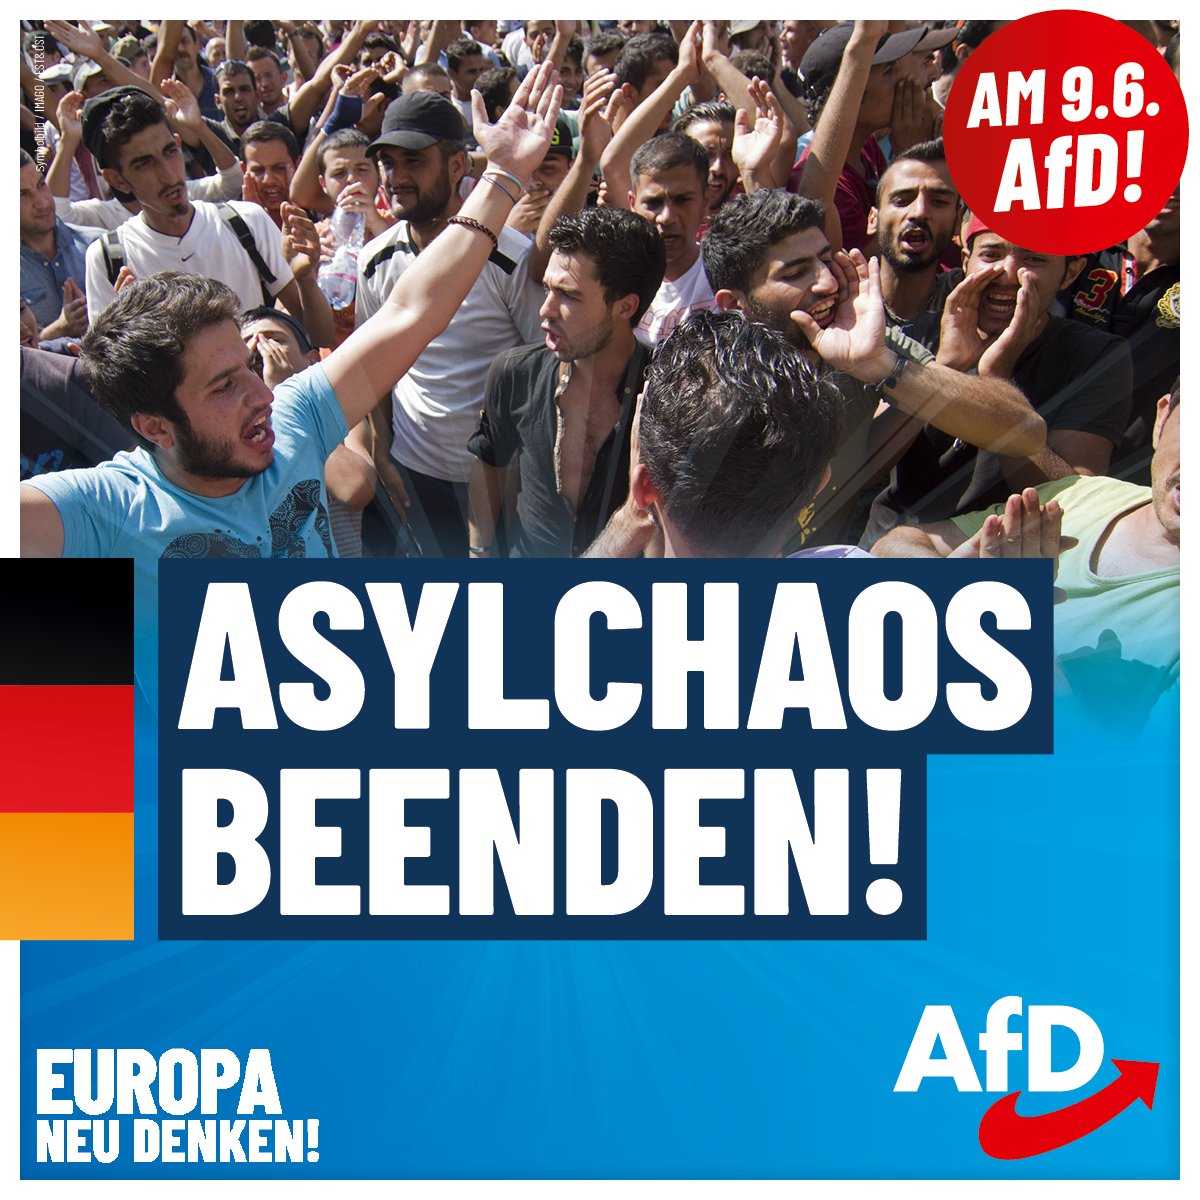 Wusstest Du, wie die AfD das Asylchaos beenden will? Die AfD fordert, dass die #Nationalstaaten über die Asylpolitik entscheiden. Die #EU hat uns nicht zu diktieren, wen wir aufnehmen! #DeshalbAfD Informiere Dich jetzt auf afd.de/europa-neu-den…... über unsere Ziele für…